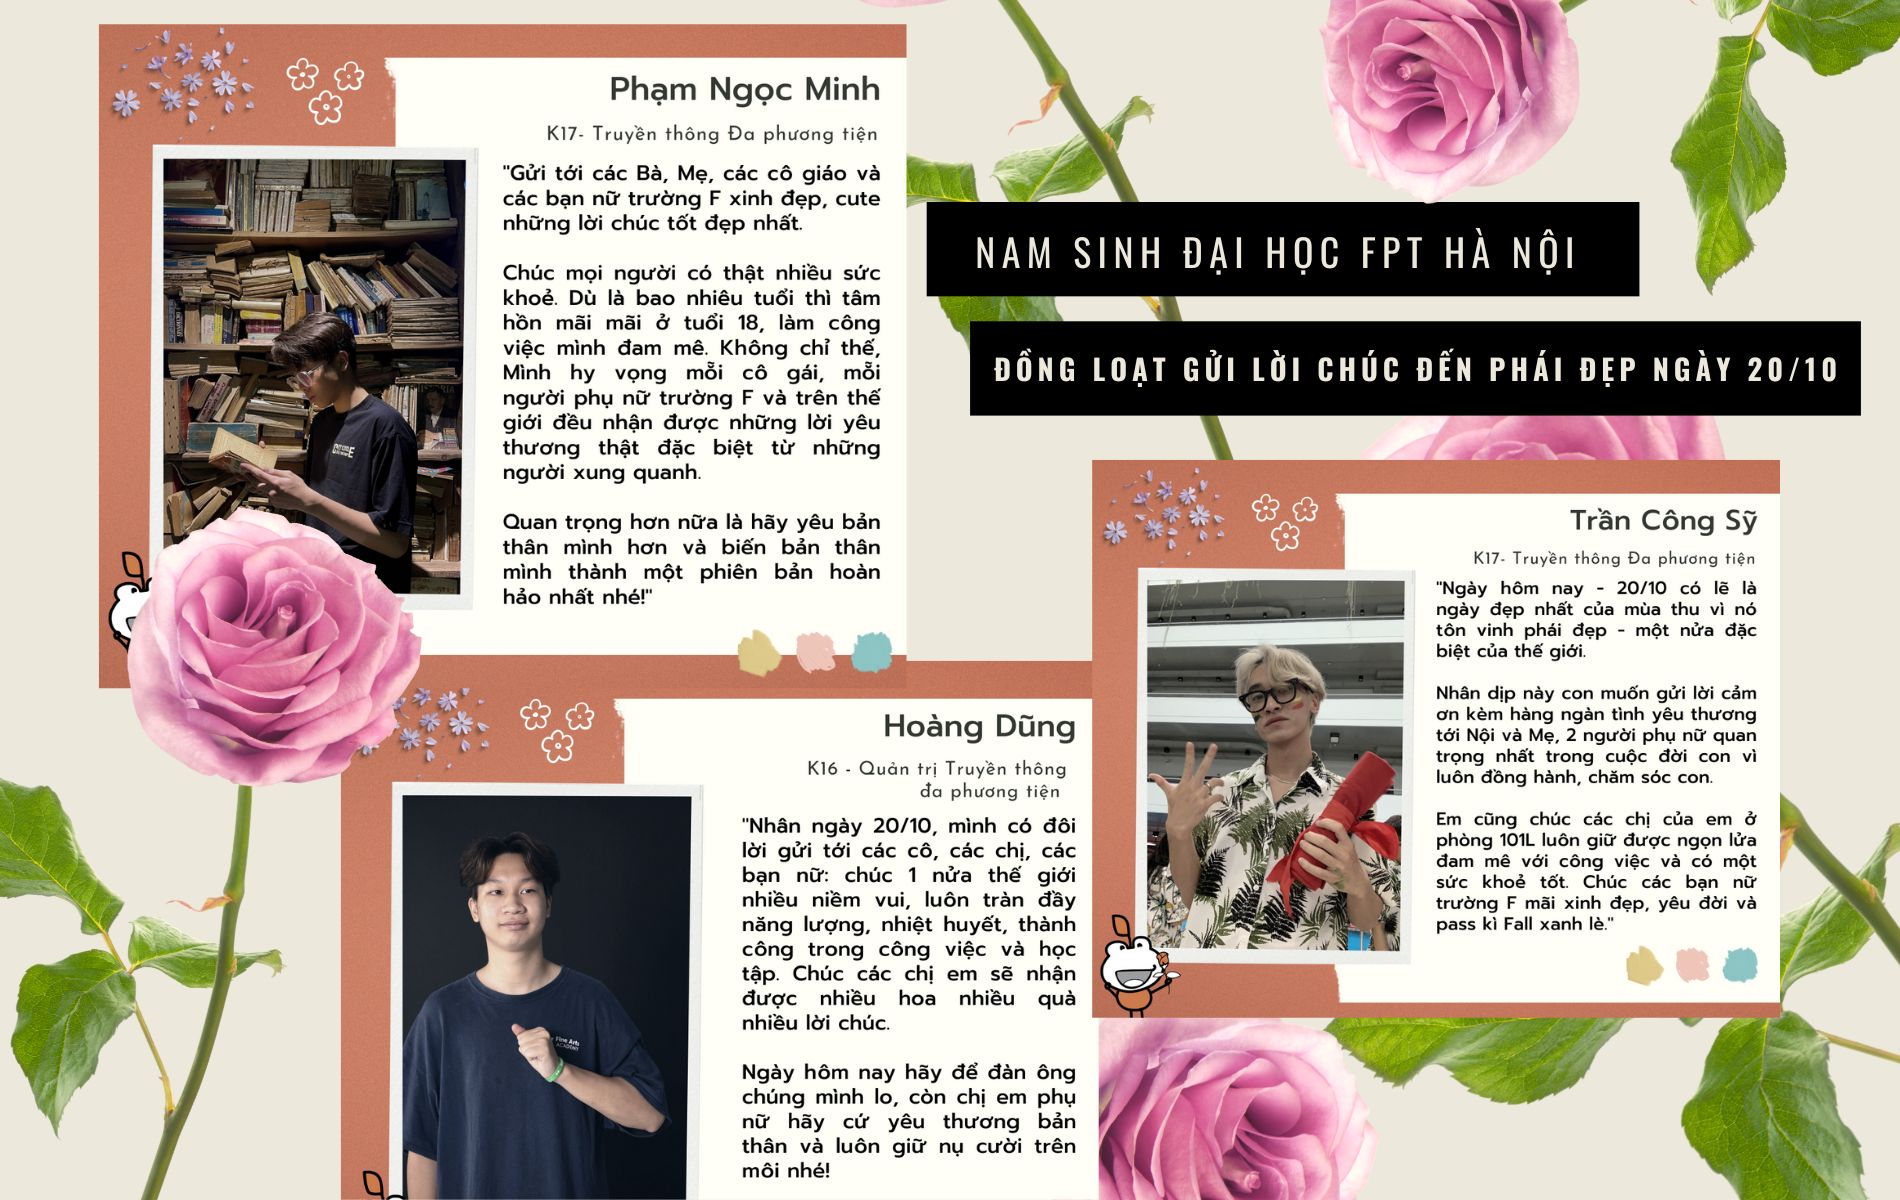 Hoa hồng Tình yêu Ảnh ghép (1900 × 1200 px) - Đại học FPT Hà Nội